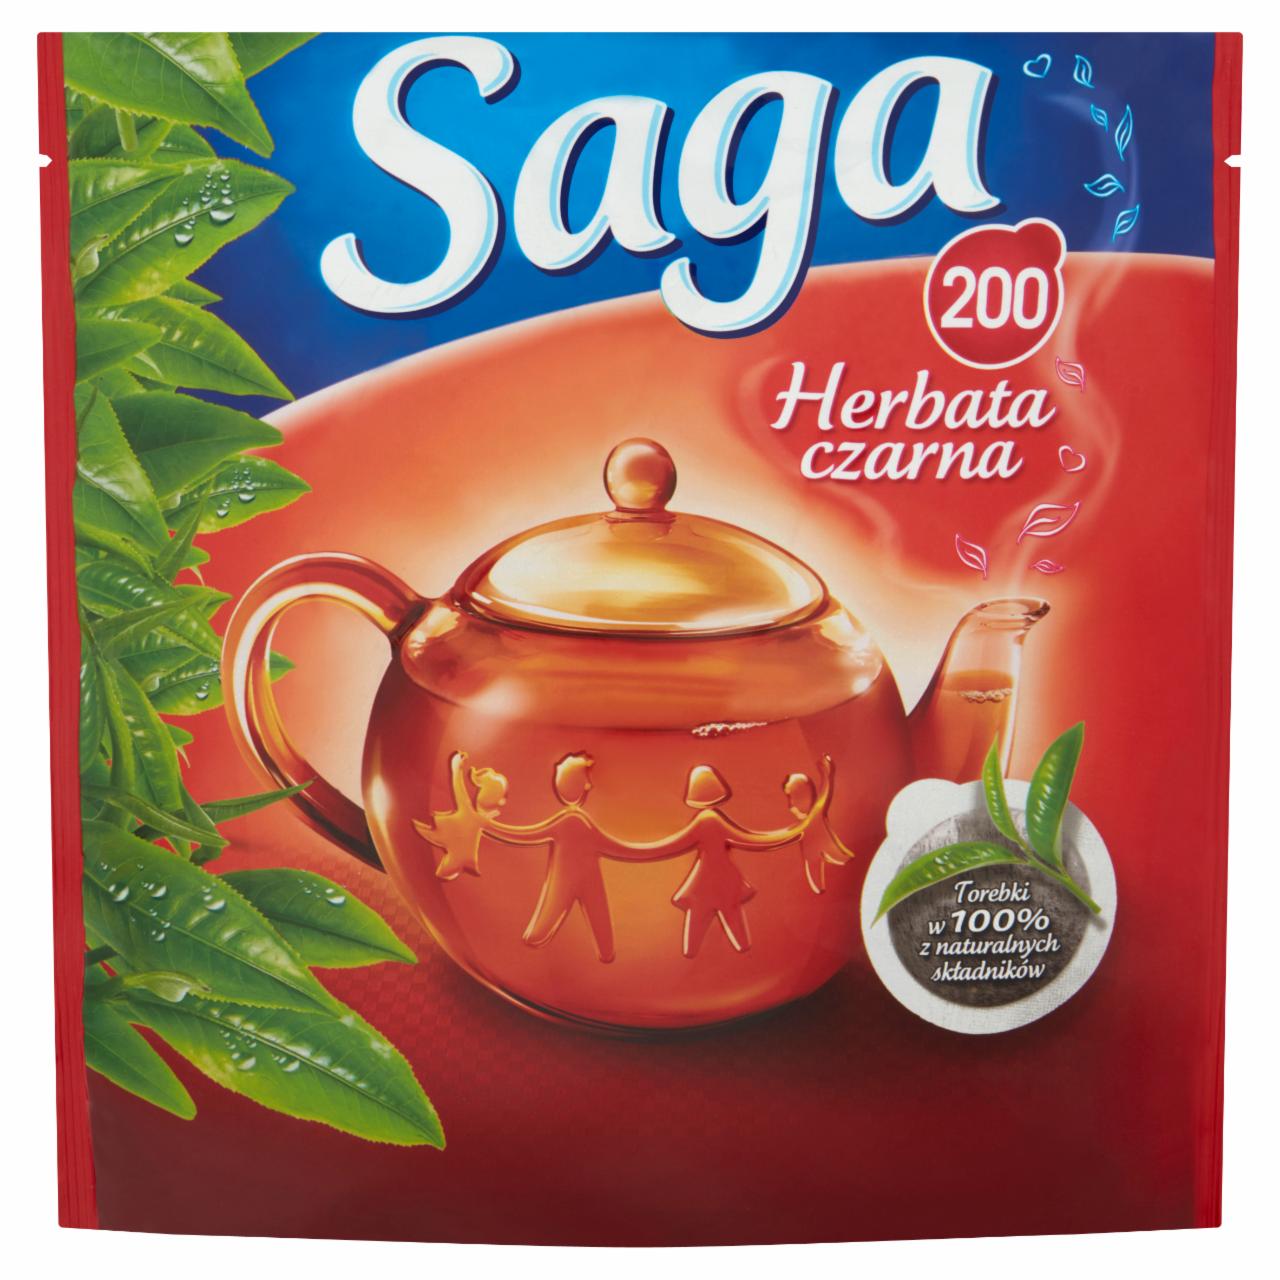 Zdjęcia - Saga Herbata czarna 280 g (200 torebek)